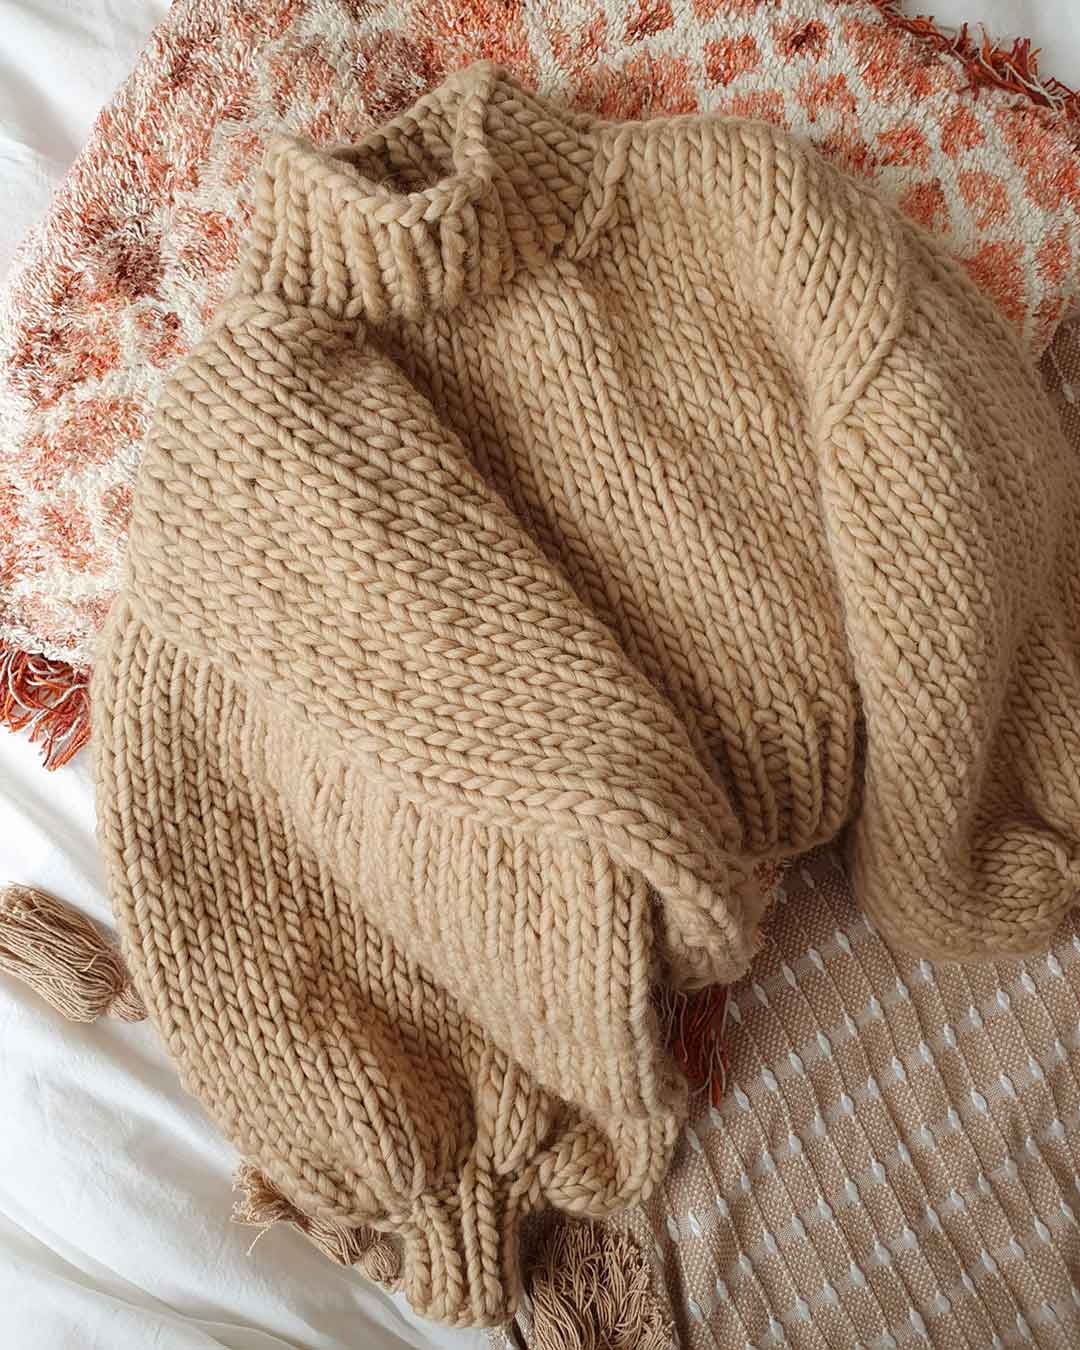 Woolen knitwear